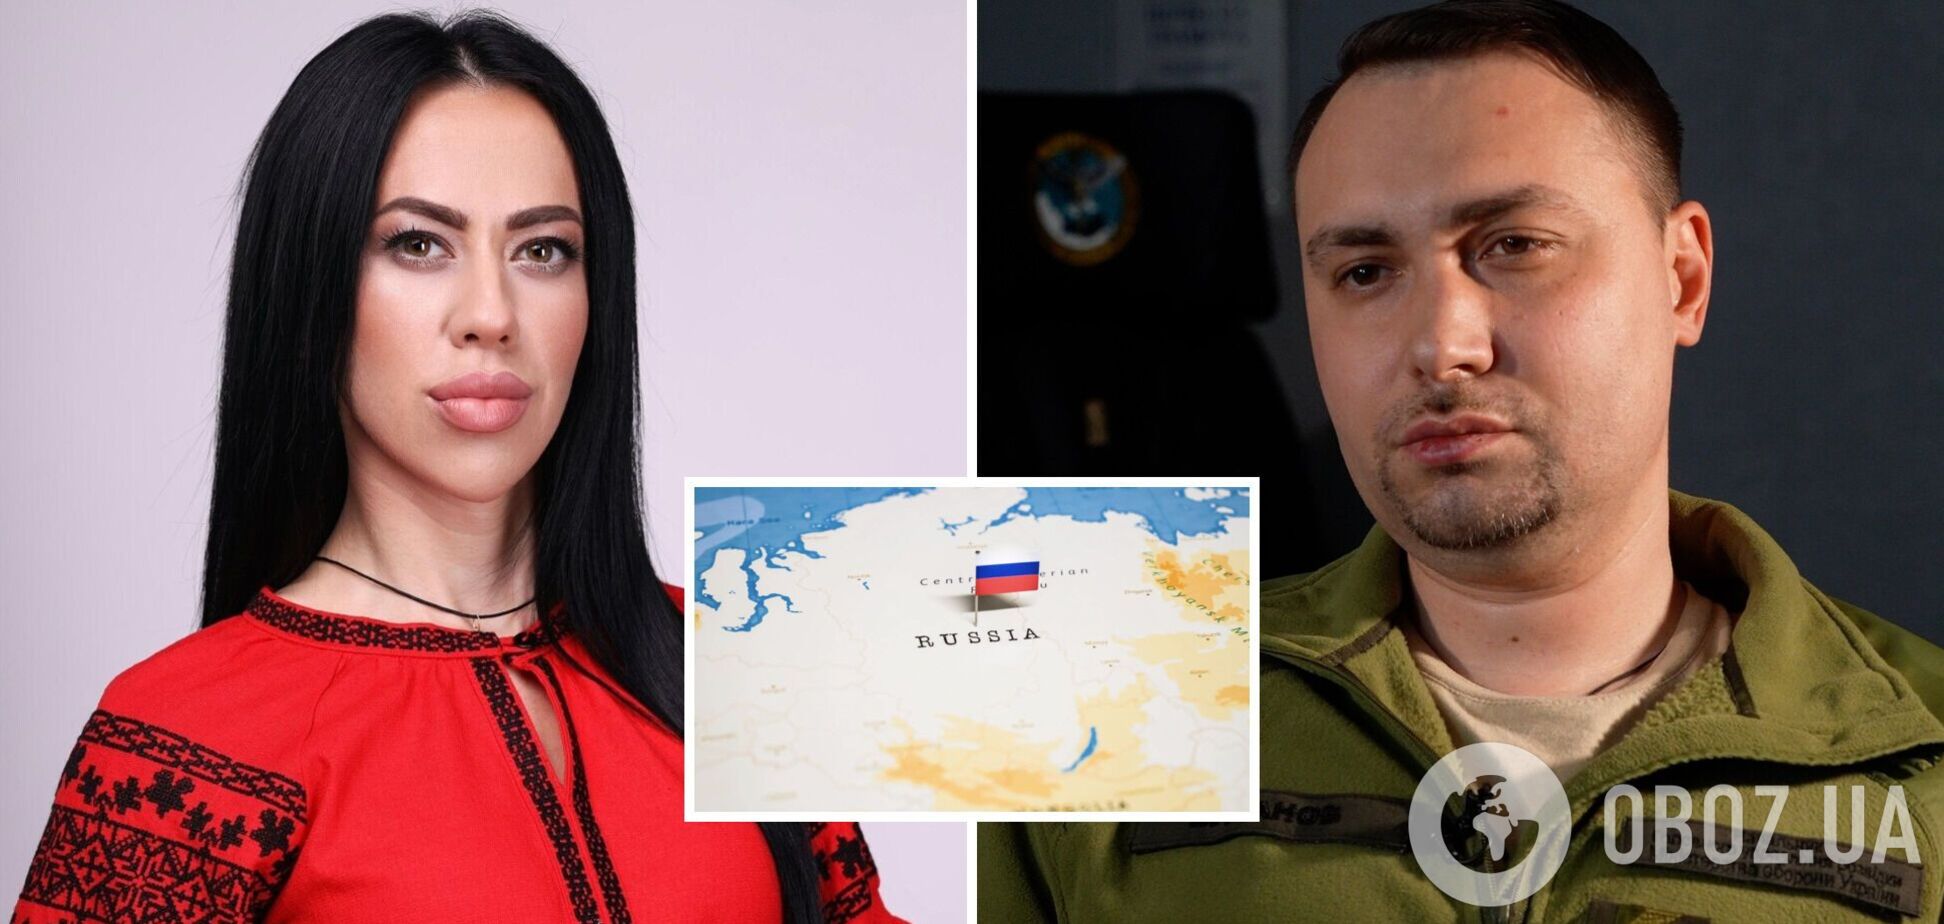 'Ответ увидите на российской территории': Буданов прокомментировал отравление своей жены